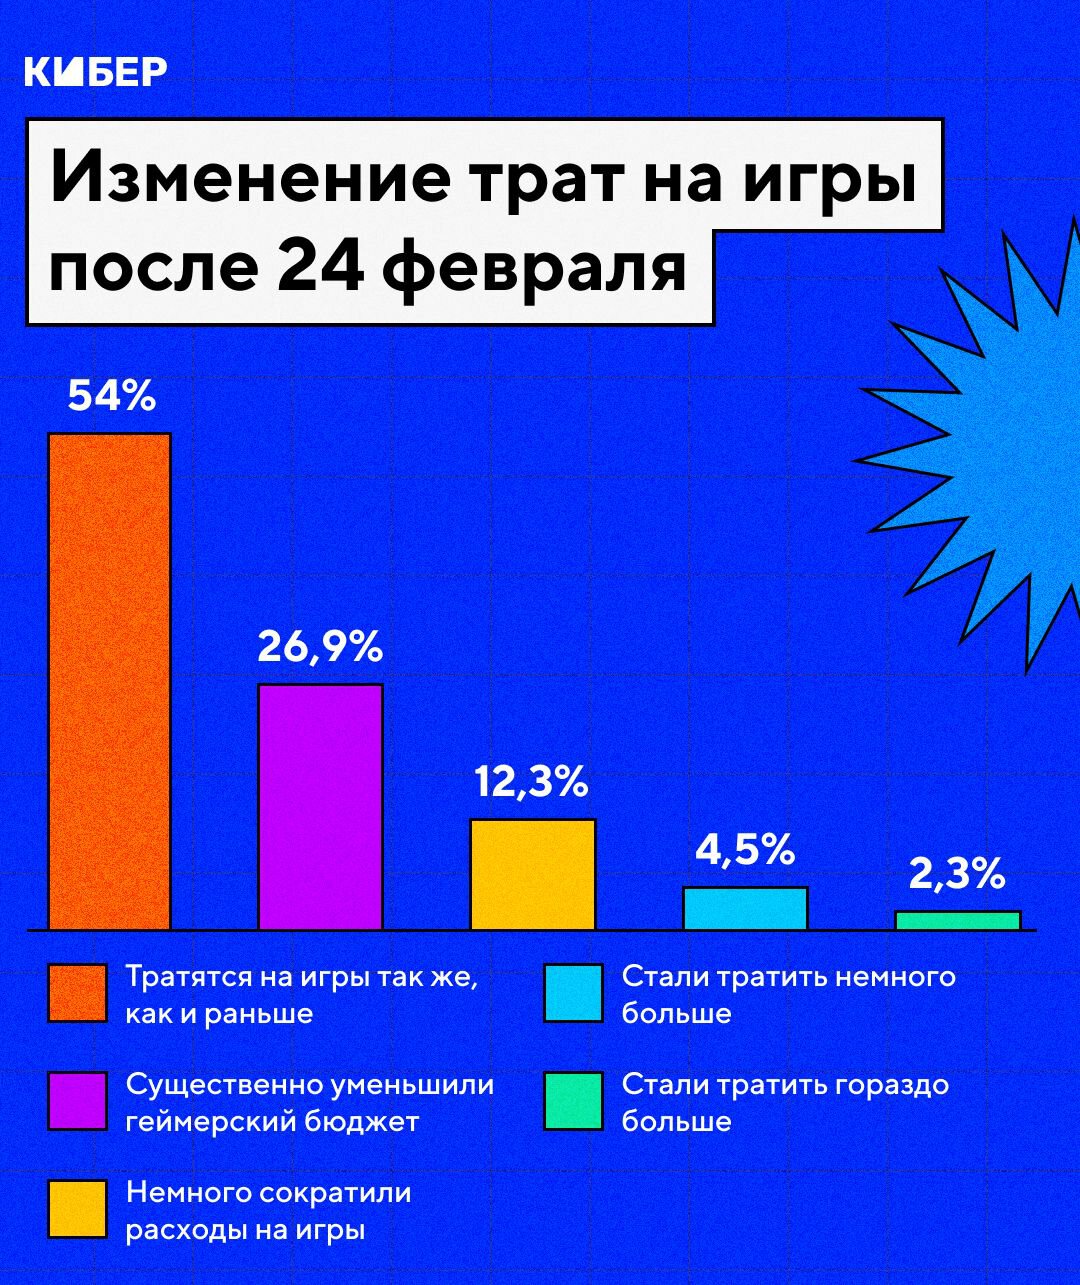 Санкции меняют гейминг в России: пиратов все больше, а консольщиков – меньше. «Сталкер 2» все равно ждут больше всего Cybere2a6a7840ad